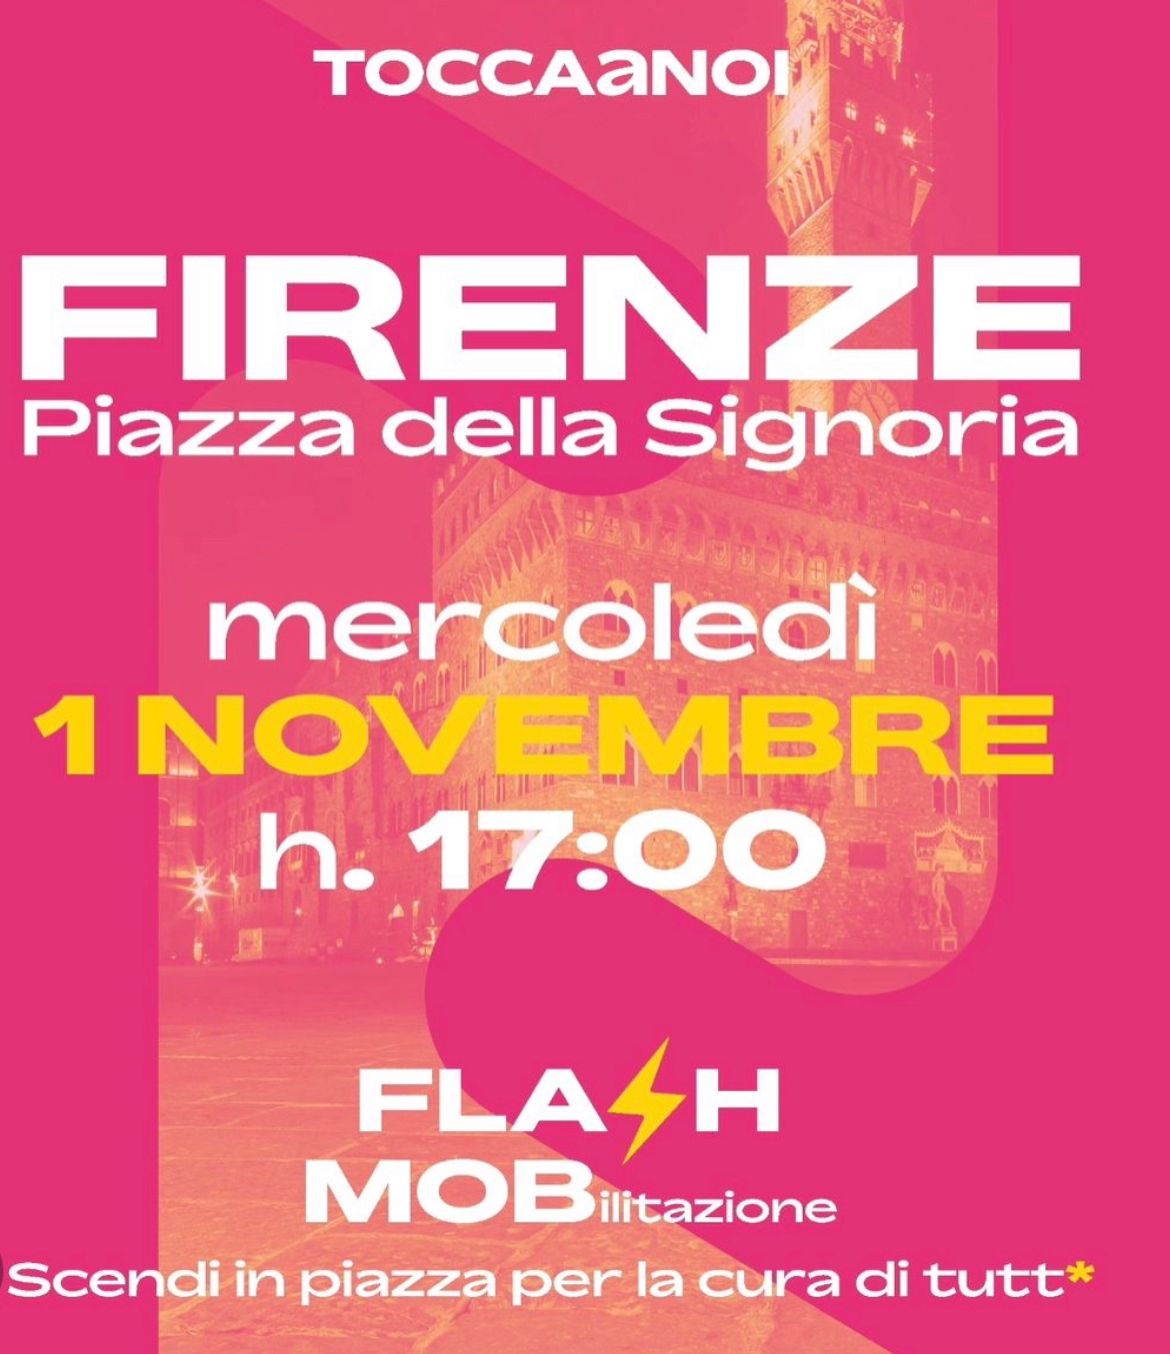 Tampon tax flash mob a Firenze contro aumenti della TamponTax e dell’Infant Tax - Prima Firenze.